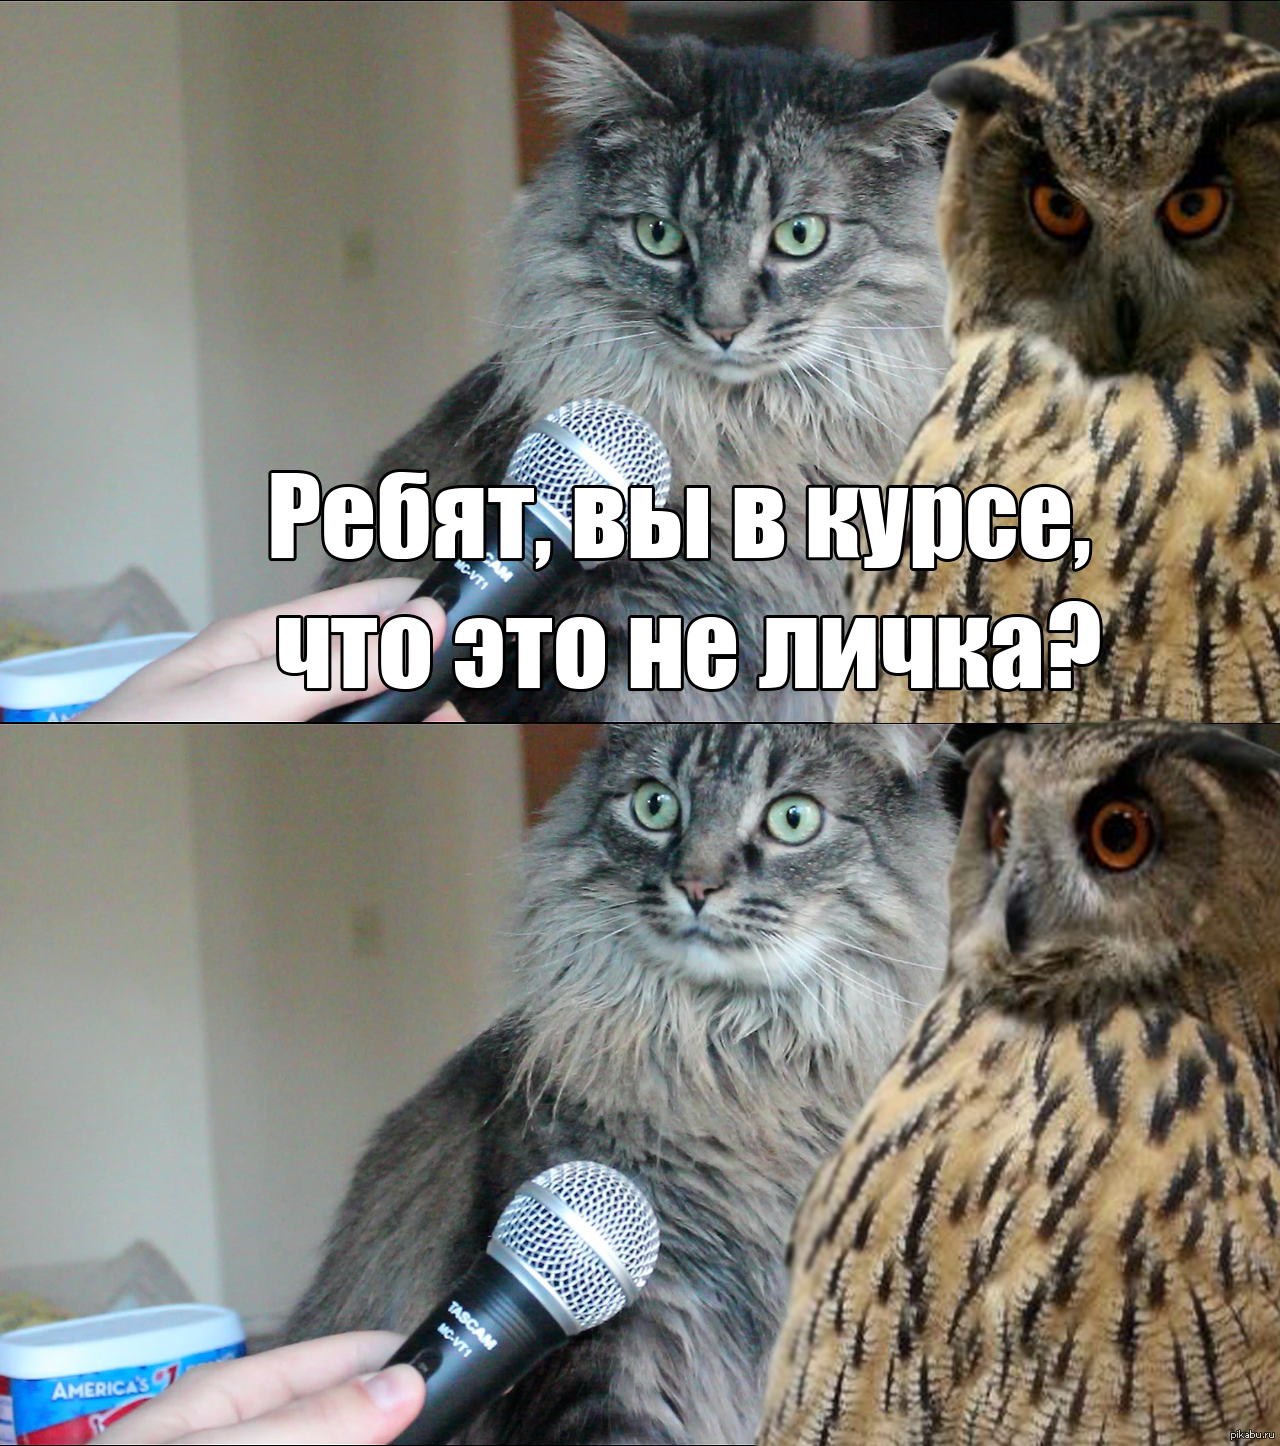 Мемы с котами для важных переговоров